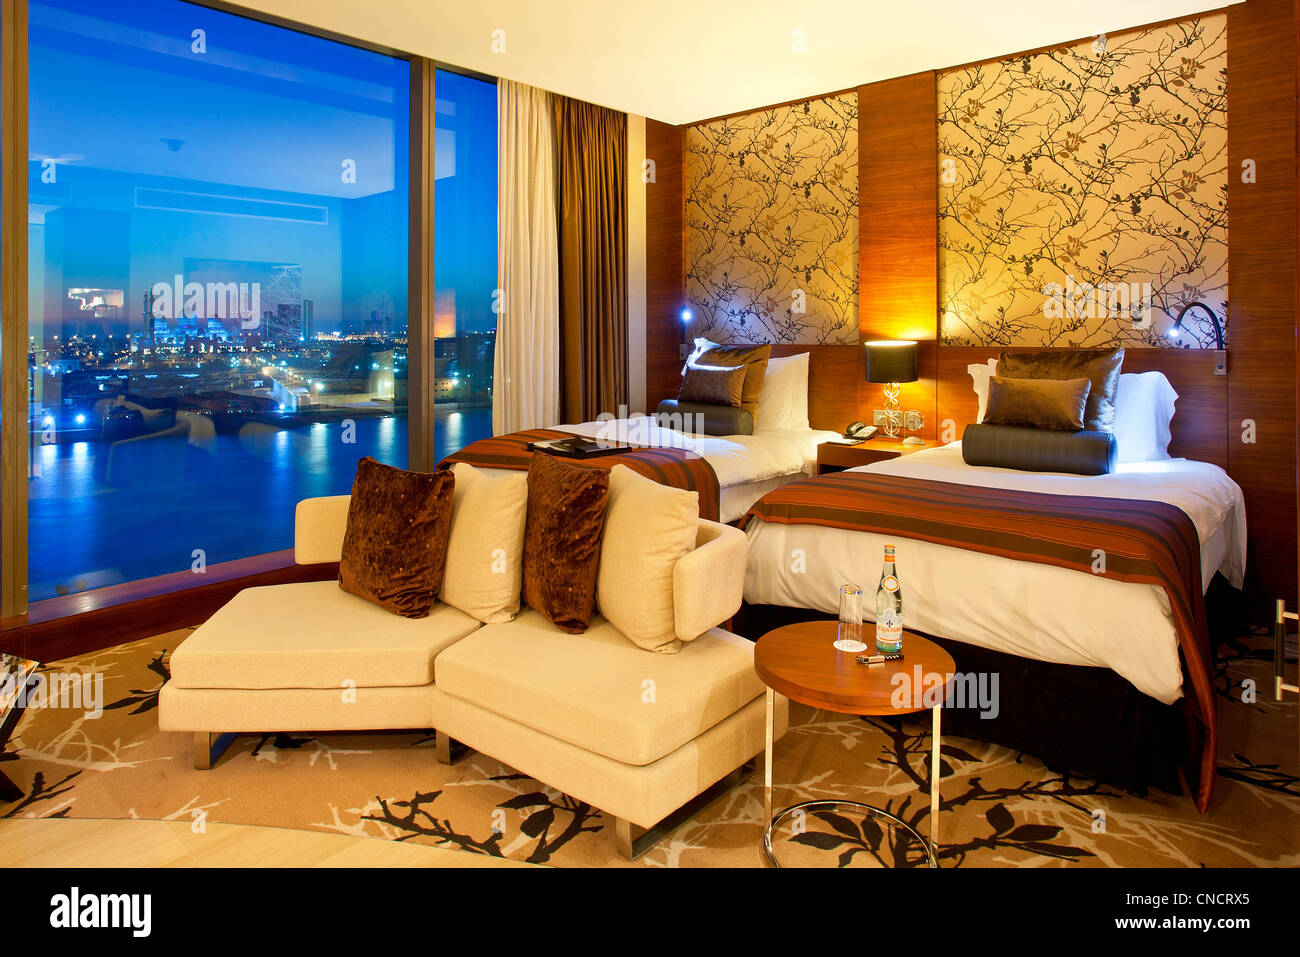 Abu Dhabi, Fairmont Hotel Stockfoto